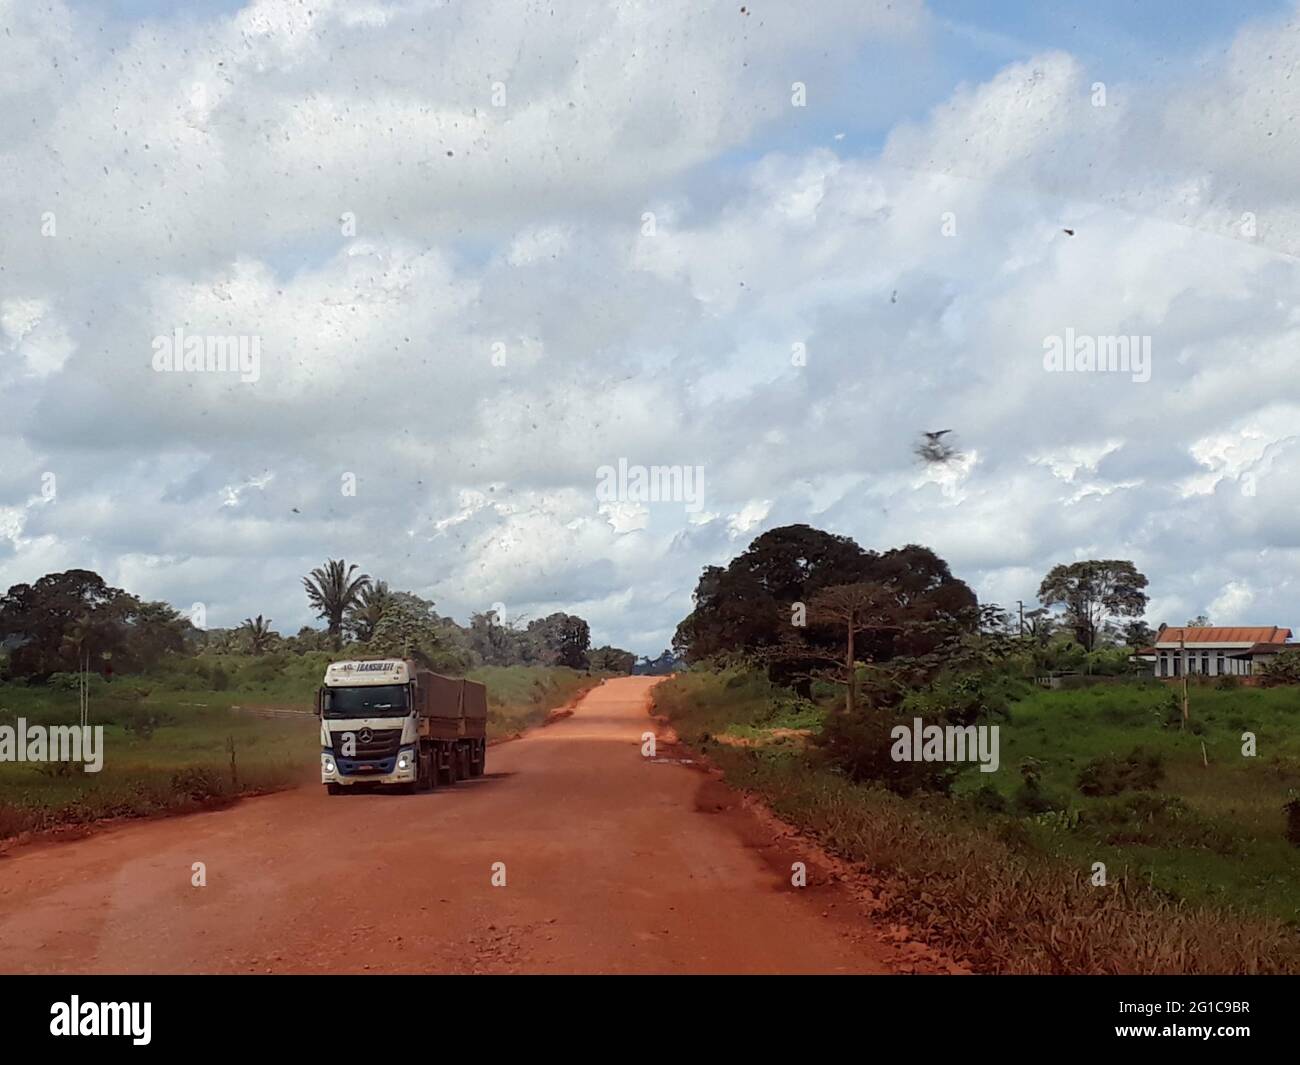 Brésil. 21 mai 2019. Les camions transportent le soja via la route BR-163 depuis les zones de culture du sud de l'Amazonie brésilienne jusqu'aux ports du nord. Les navires transportent le soja des ports vers l'Europe. Credit: Martina Farmbauer/dpa/Alay Live News Banque D'Images